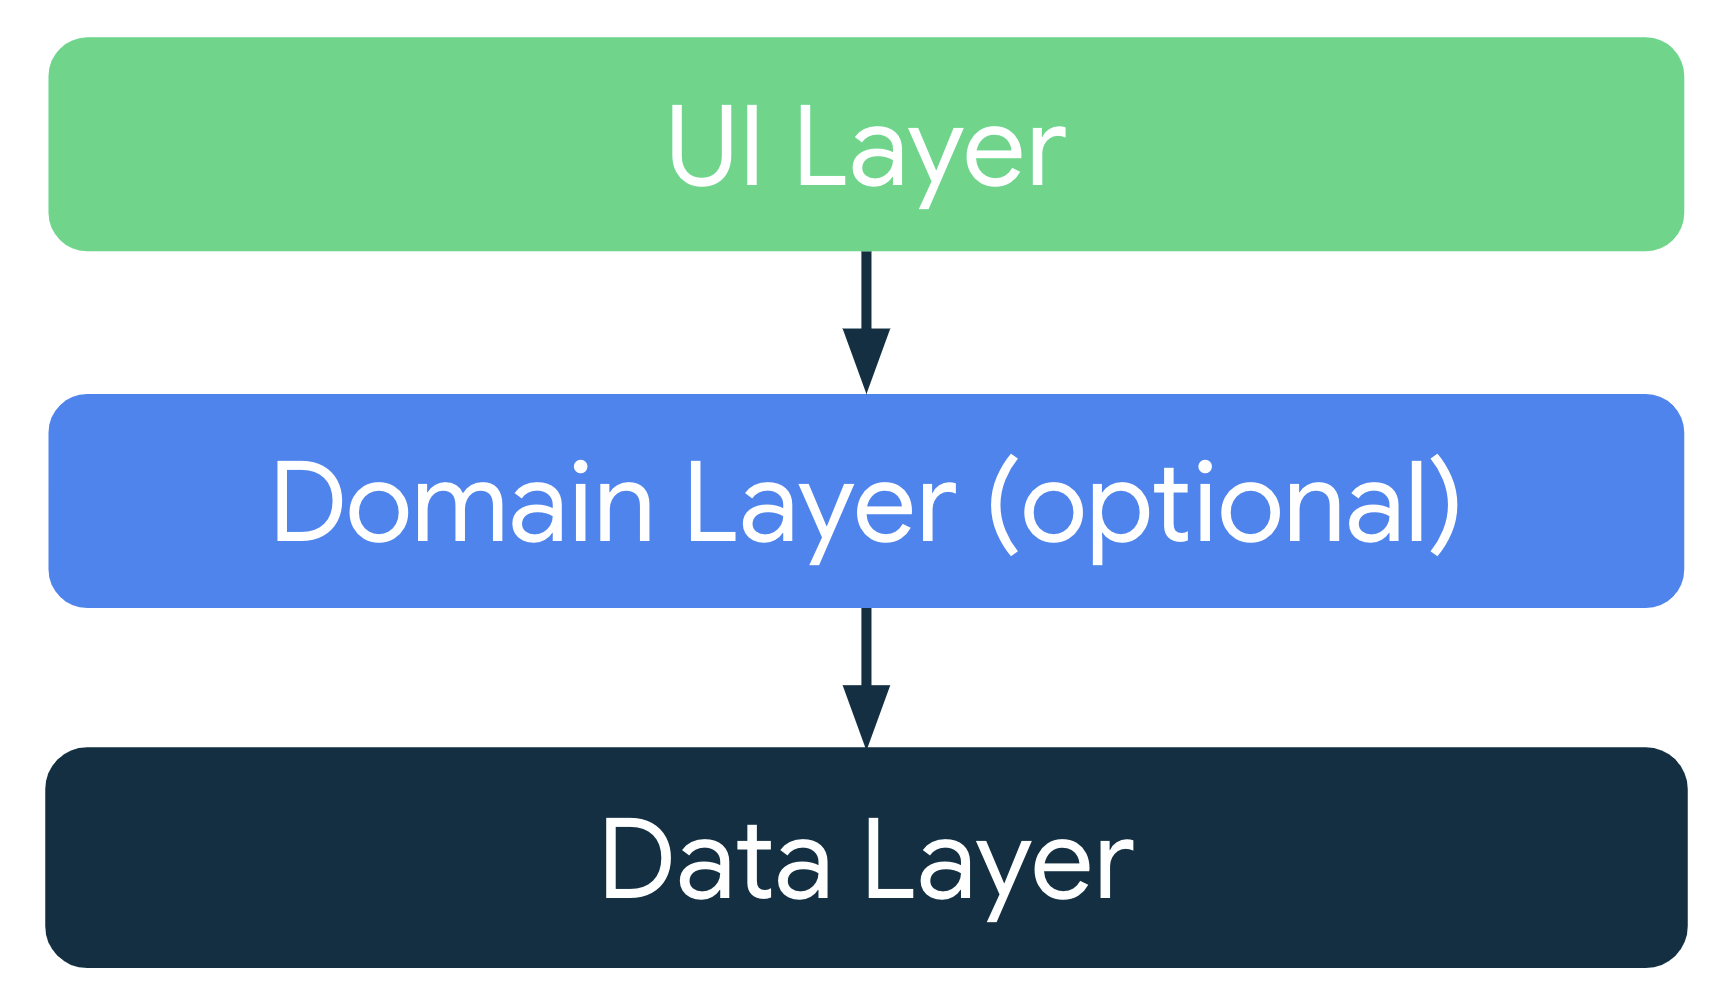 En una arquitectura típica de la app, la capa de la IU obtiene los datos de la app de la capa de datos o de la capa opcional de dominio, que se encuentra entre la capa de la IU y la de datos.